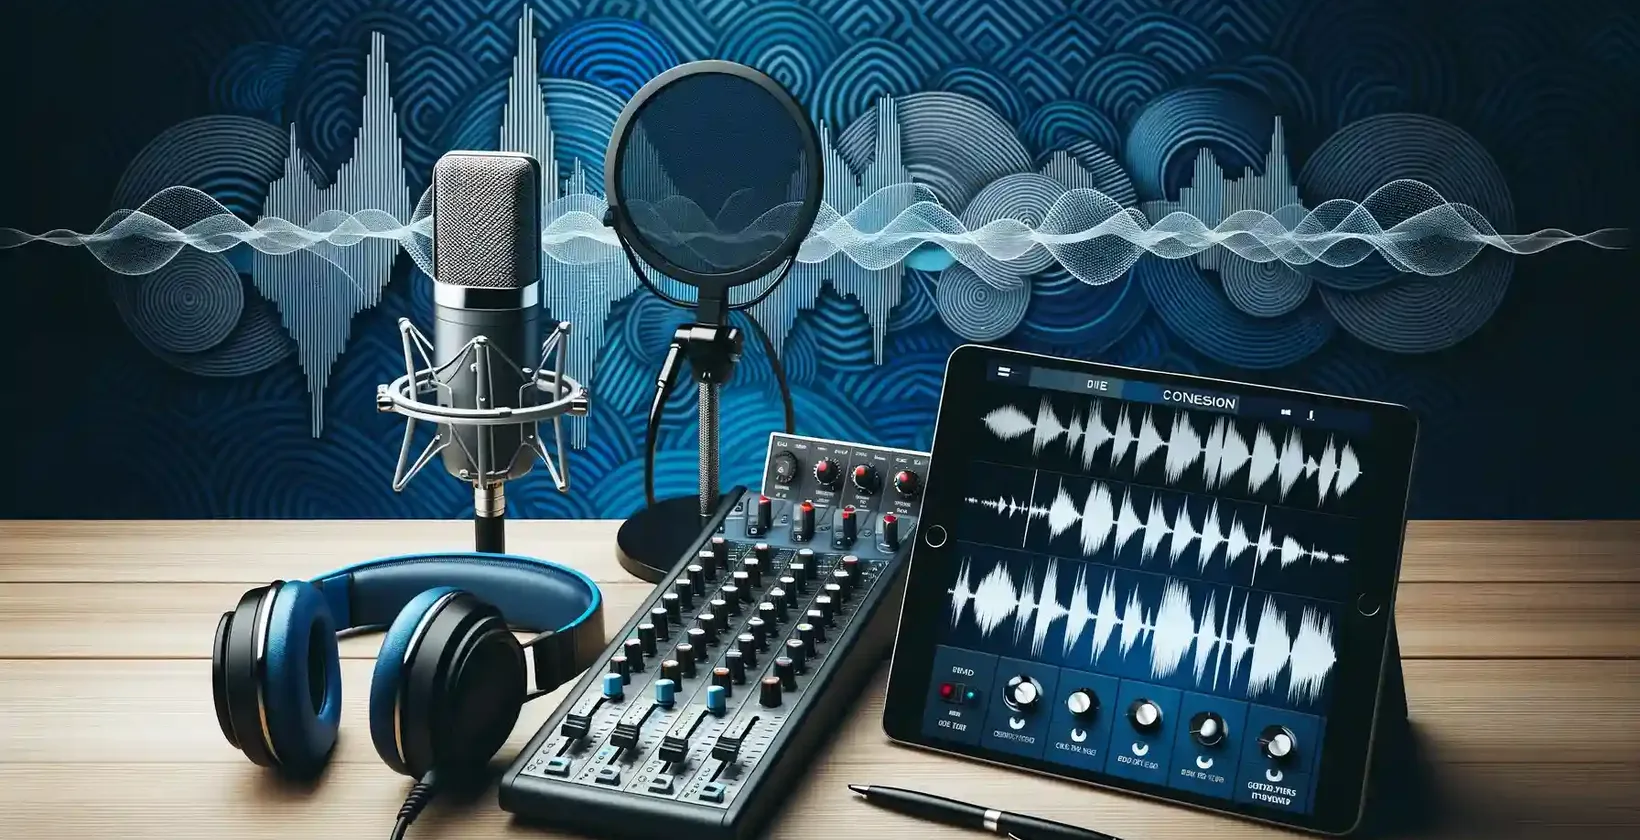 Professionel opsætning af podcast-transskription med mikrofon og hovedtelefoner, der fremhæver transskriptionstjenesterne.